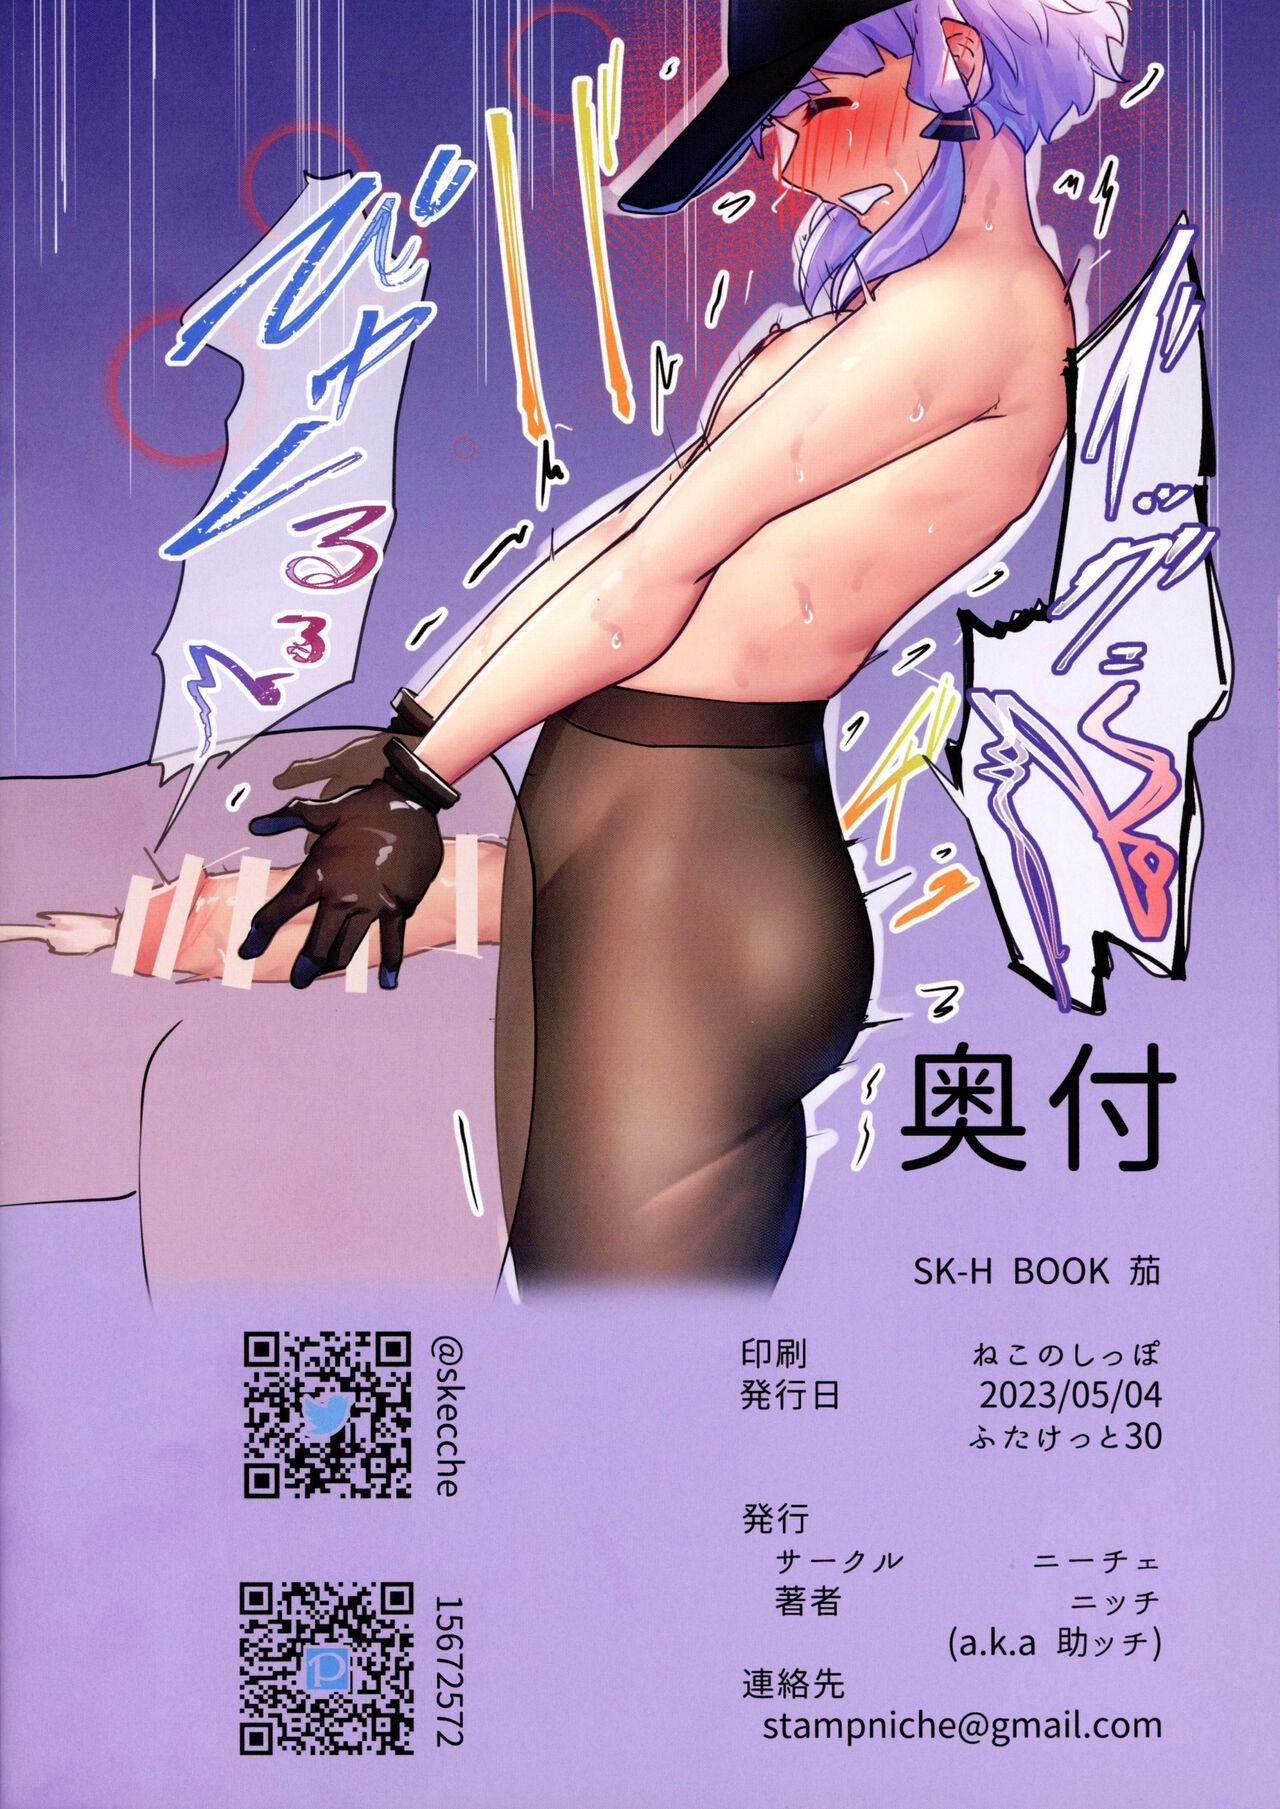 SK-H BOOK Nasu 11